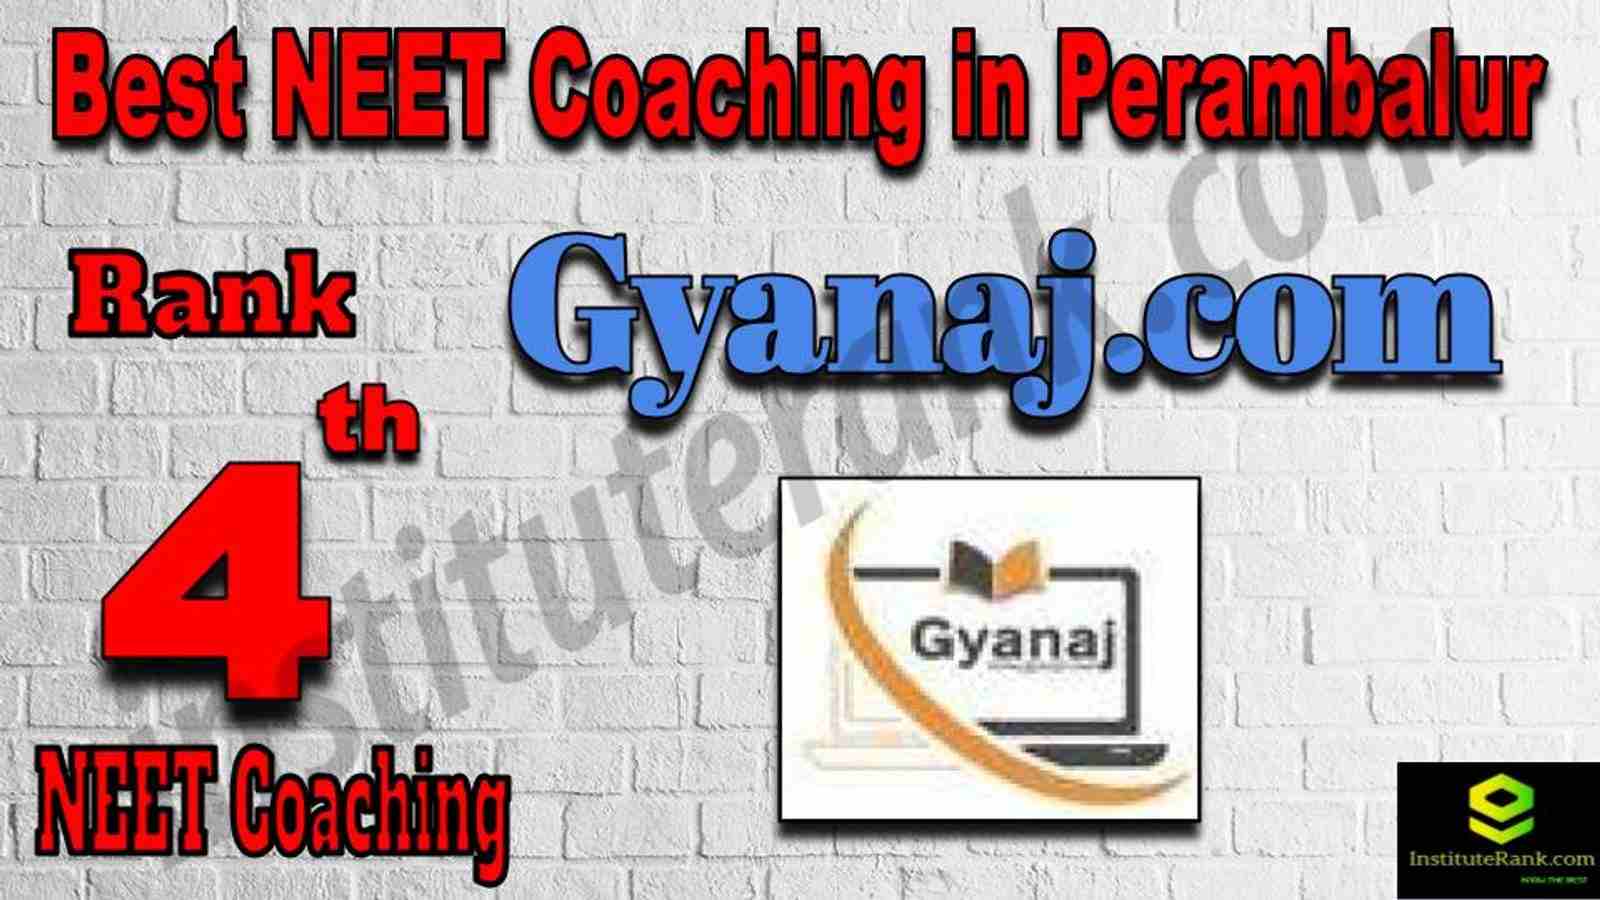 4th Best NEET Coaching in Perambalur